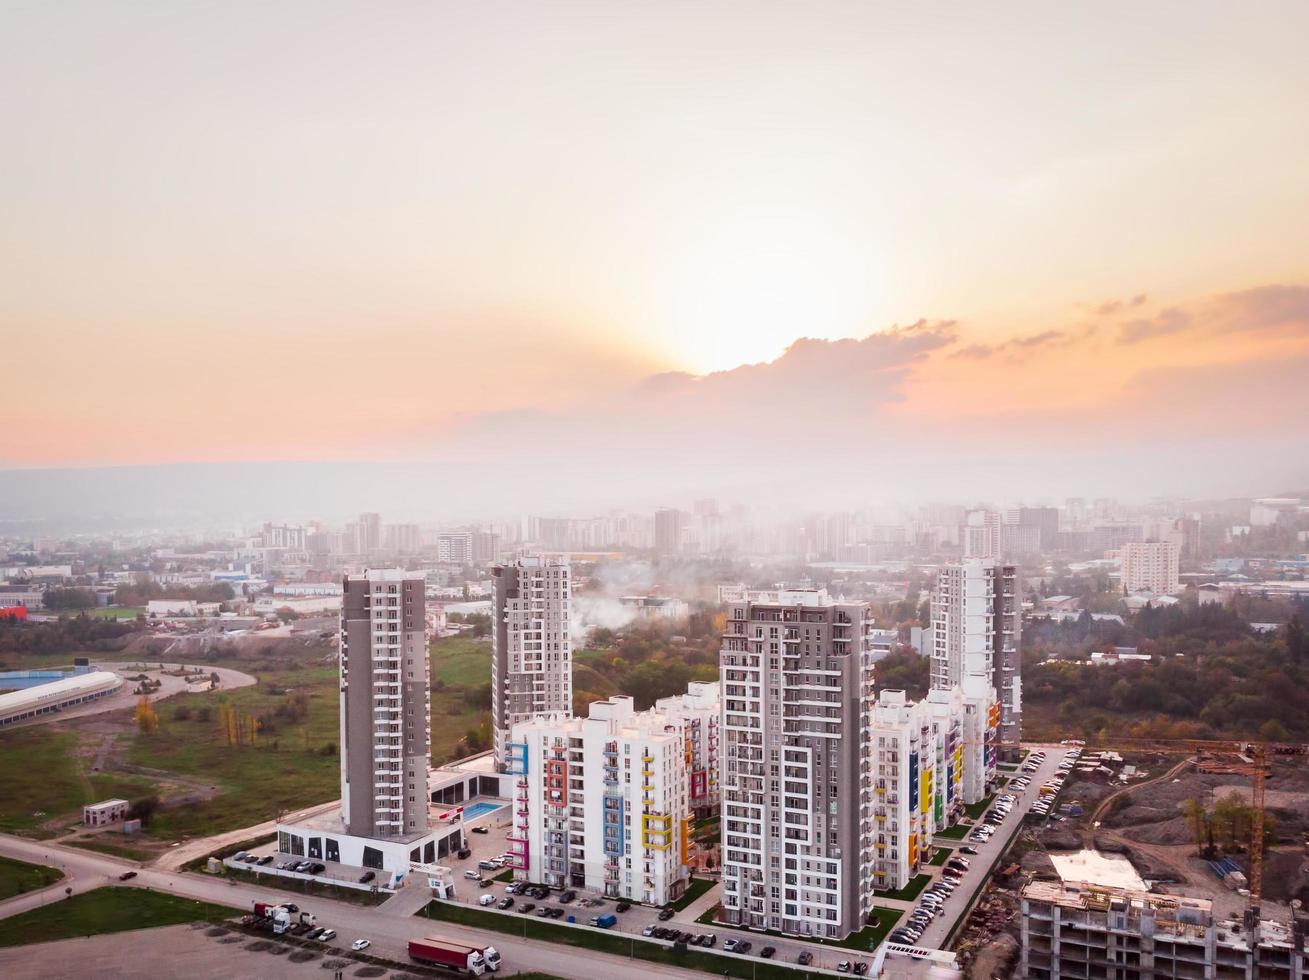 tbilisi, geórgia, 2021 - vista aérea complexo de apartamentos diamante complexo de edifícios imobiliários altos nos subúrbios da cidade com céu nebuloso poluído e fundo por do sol foto